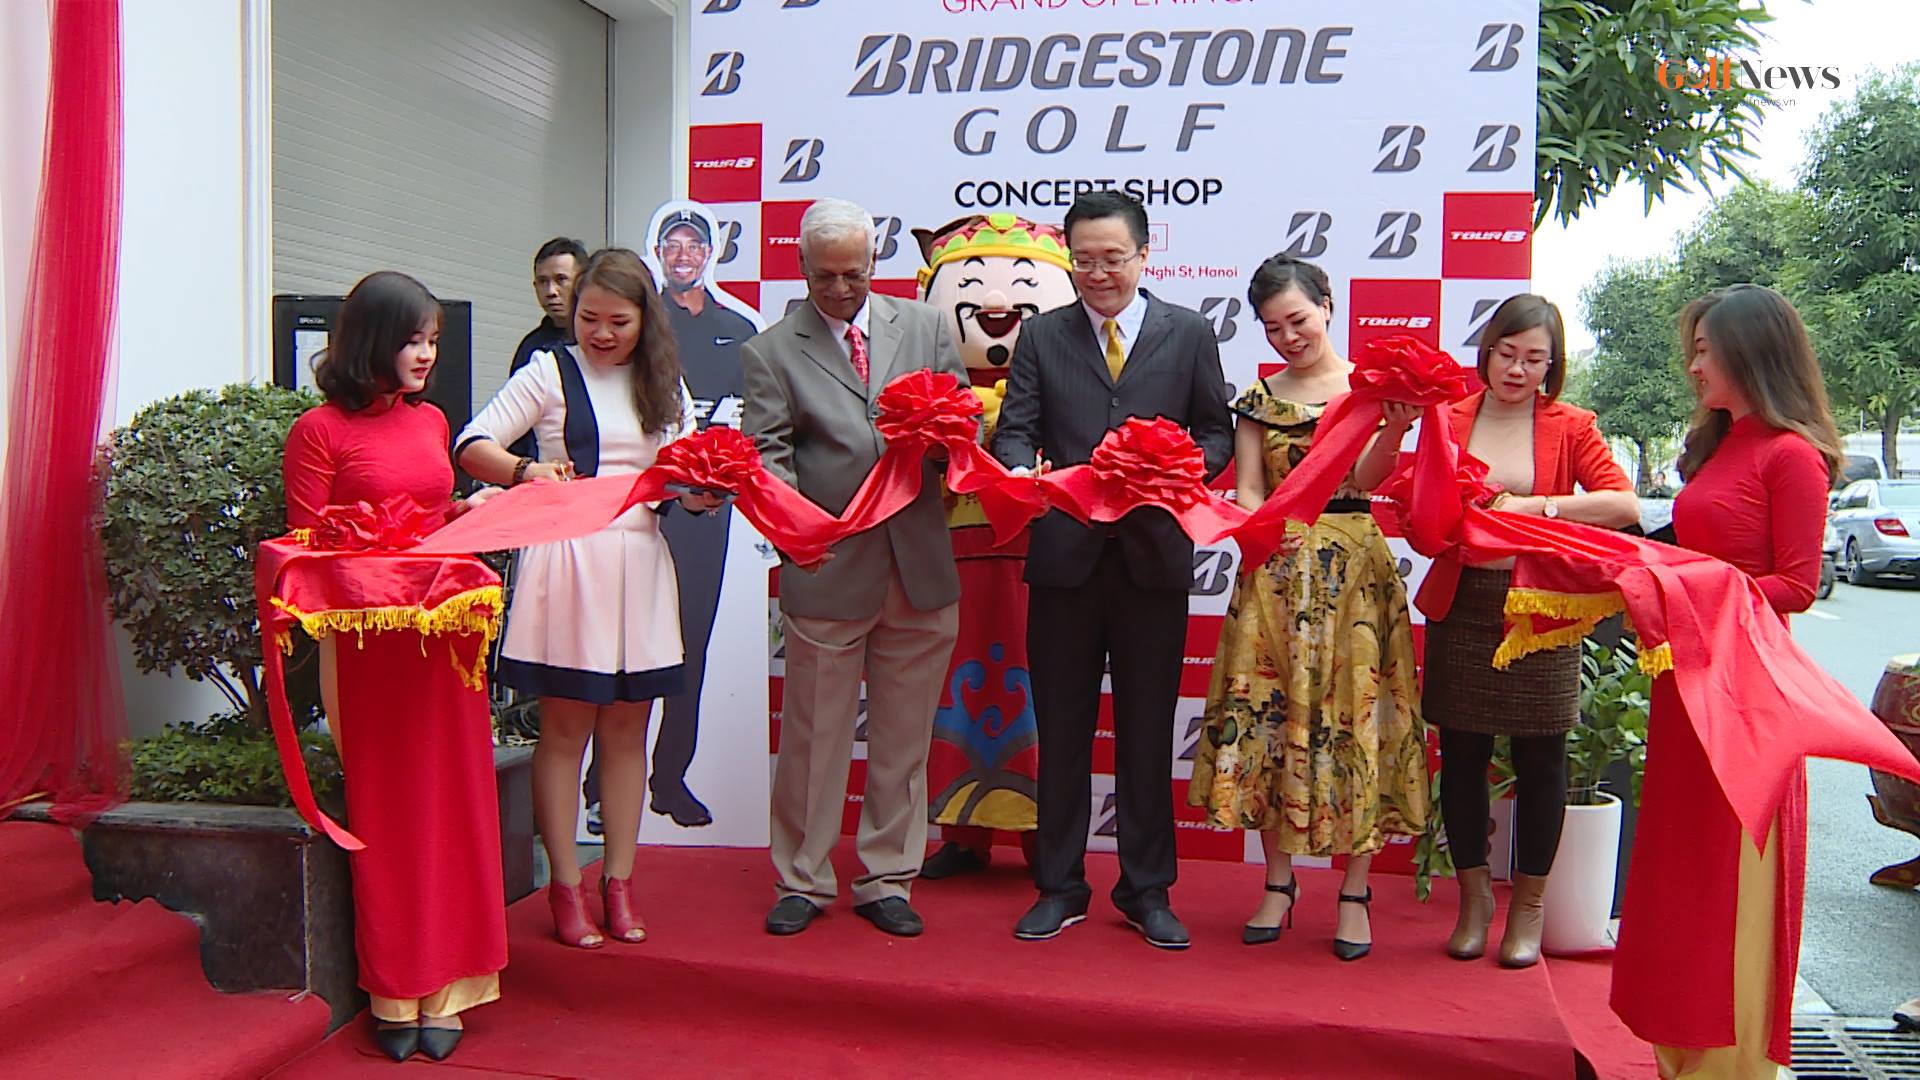 Ra mắt Bridgestone Golf Concept Shop đầu tiên ở Việt Nam